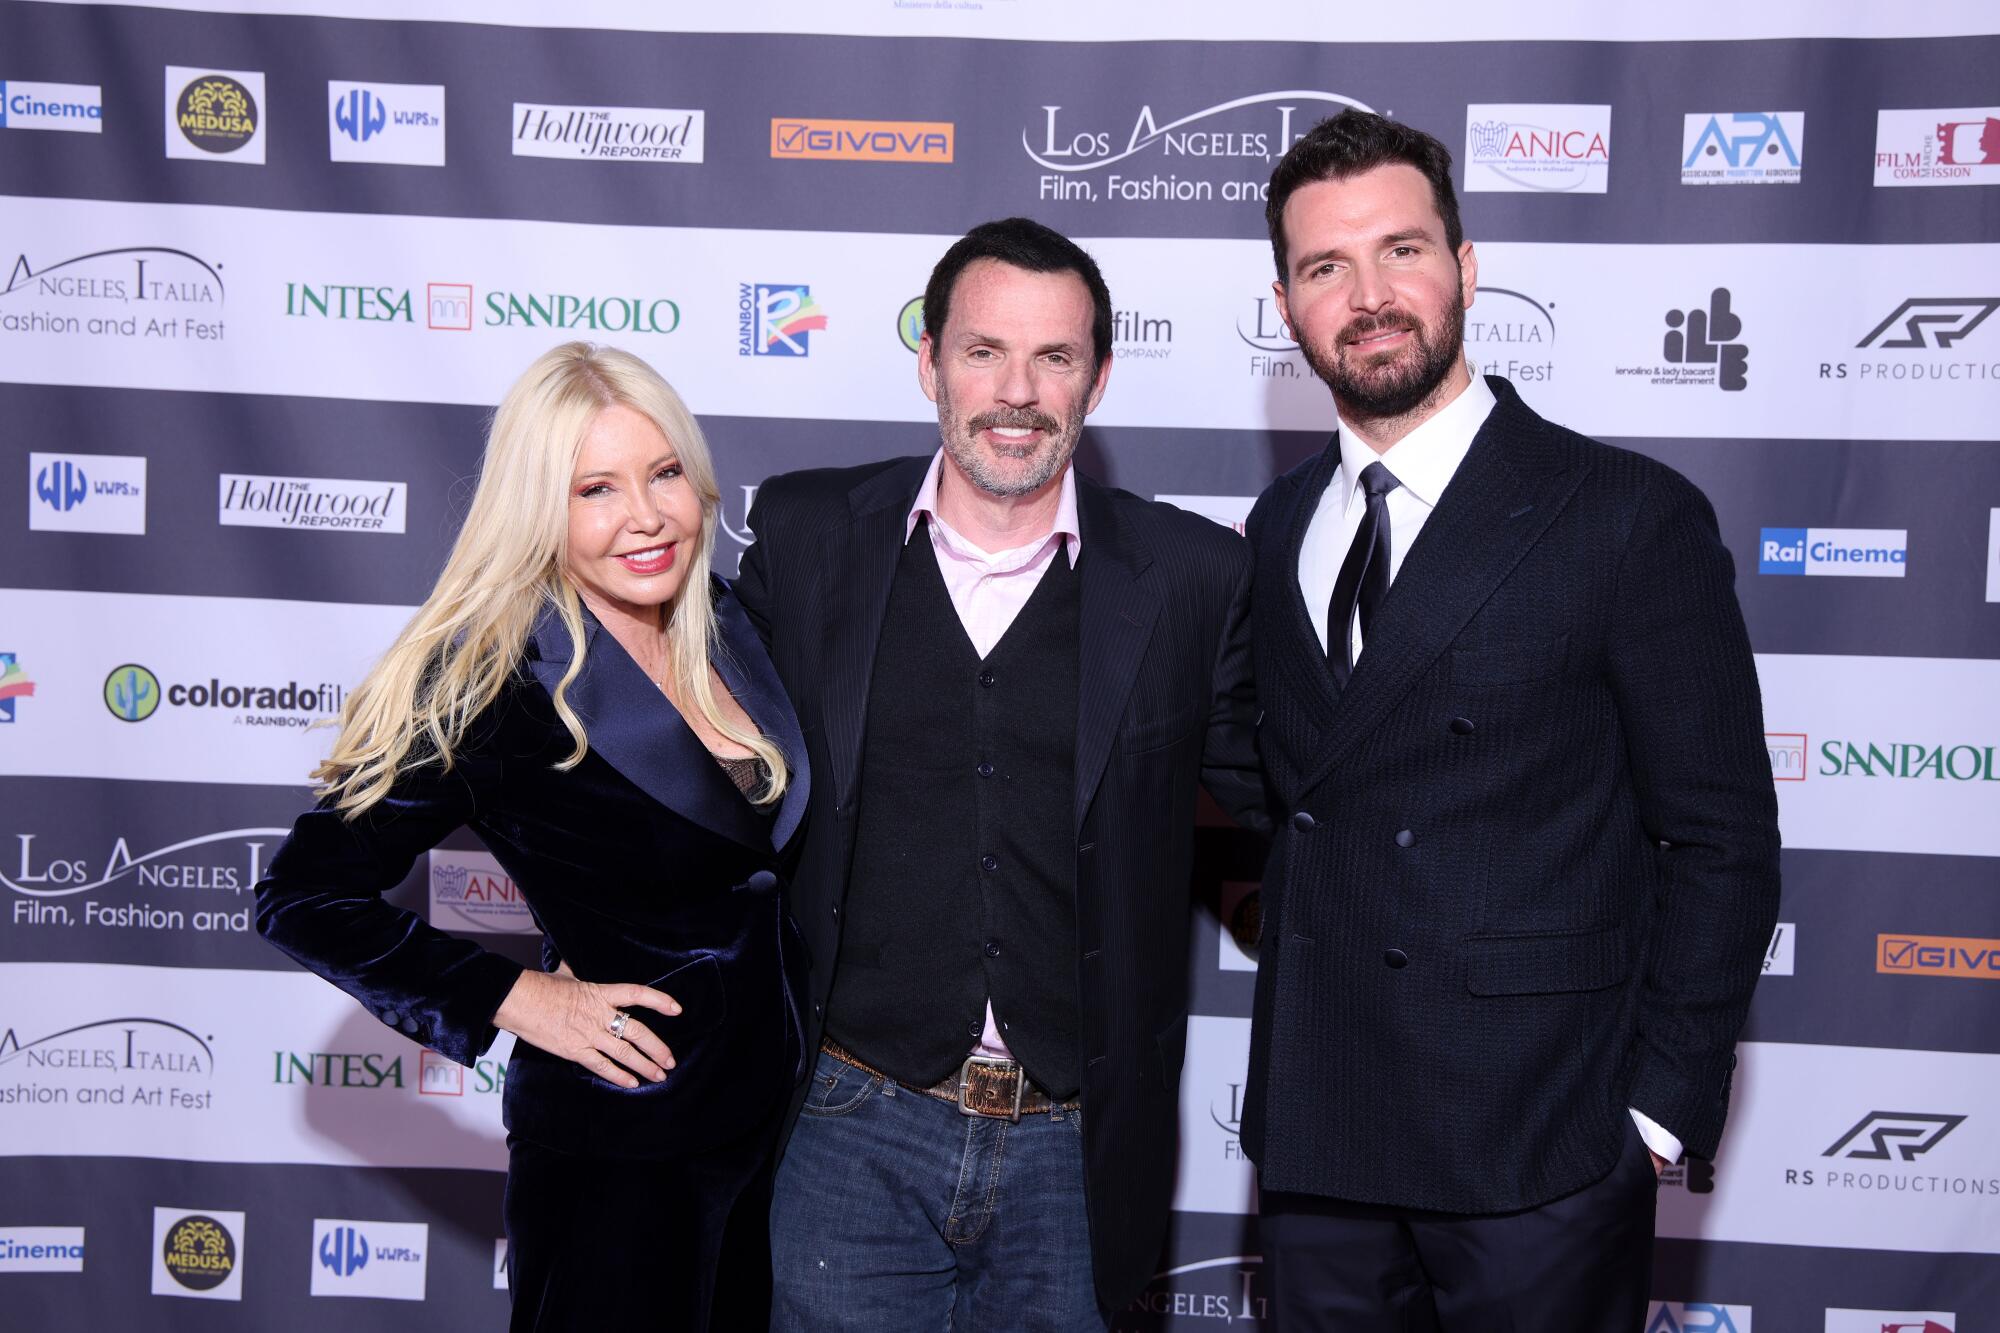 Bret Saxon  attending the Los Angeles Italia Film Festival in March